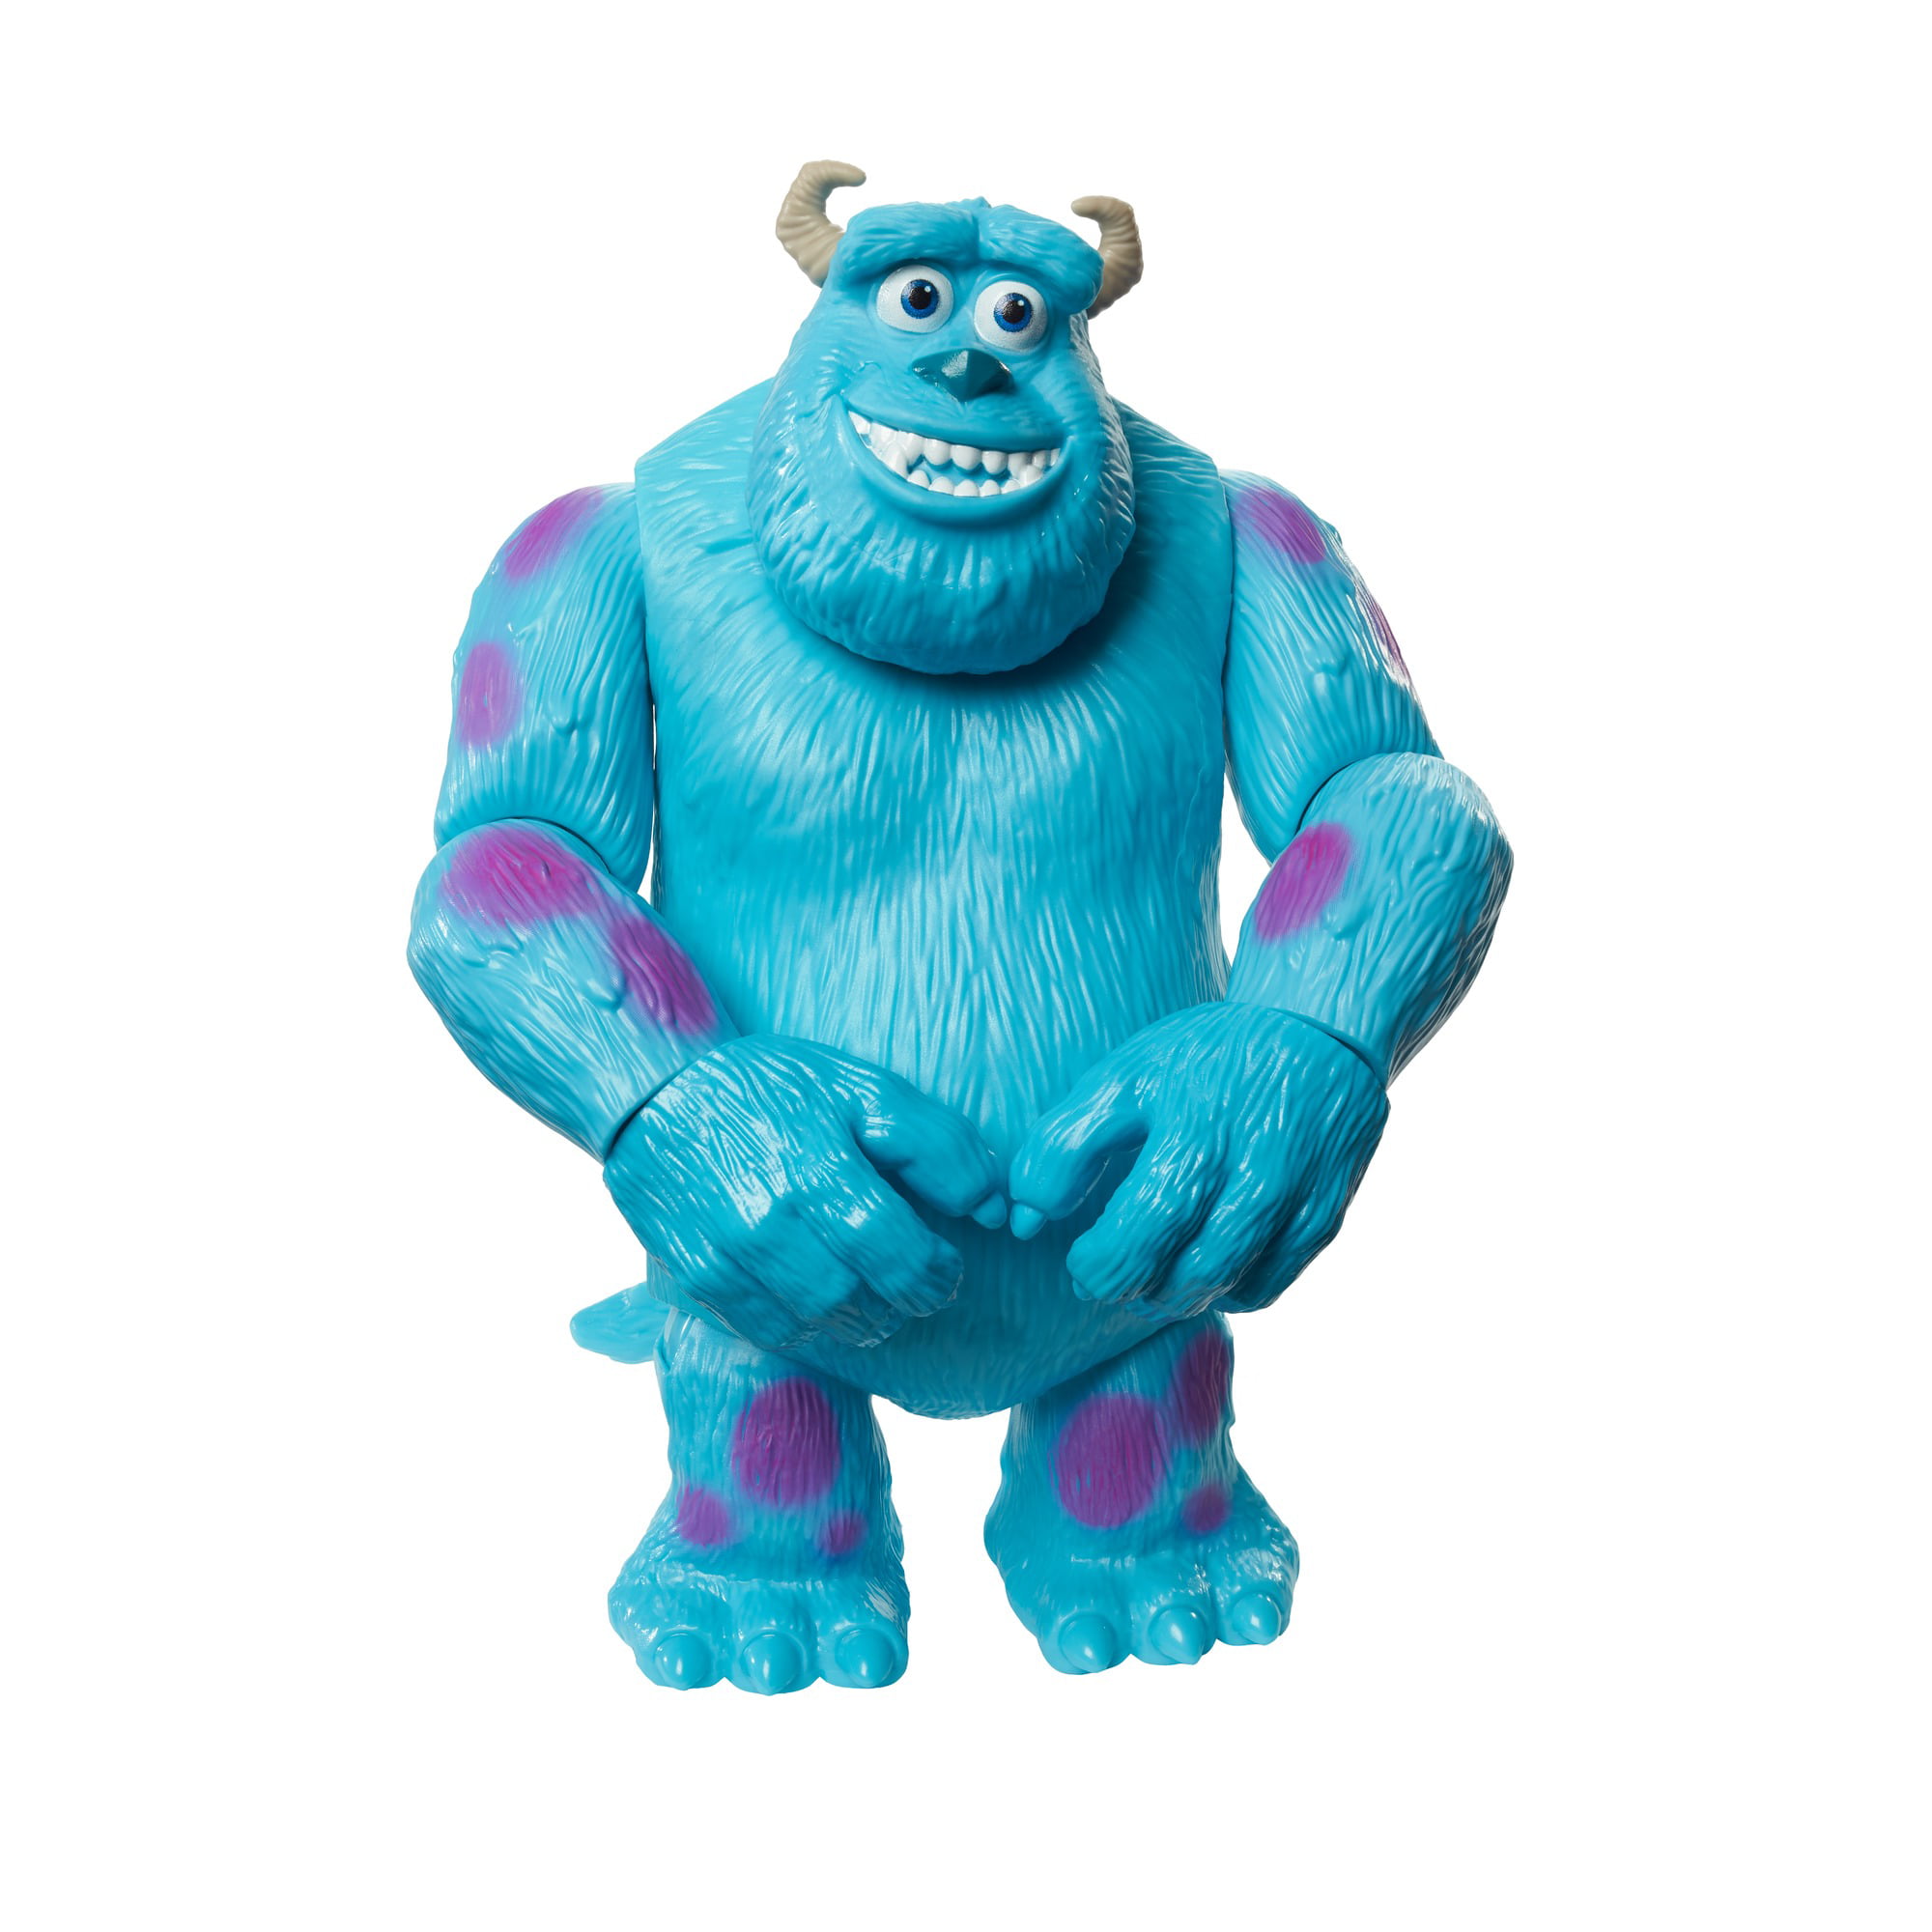 Nouveau Disney Pixar Monstres Inc Sulley 